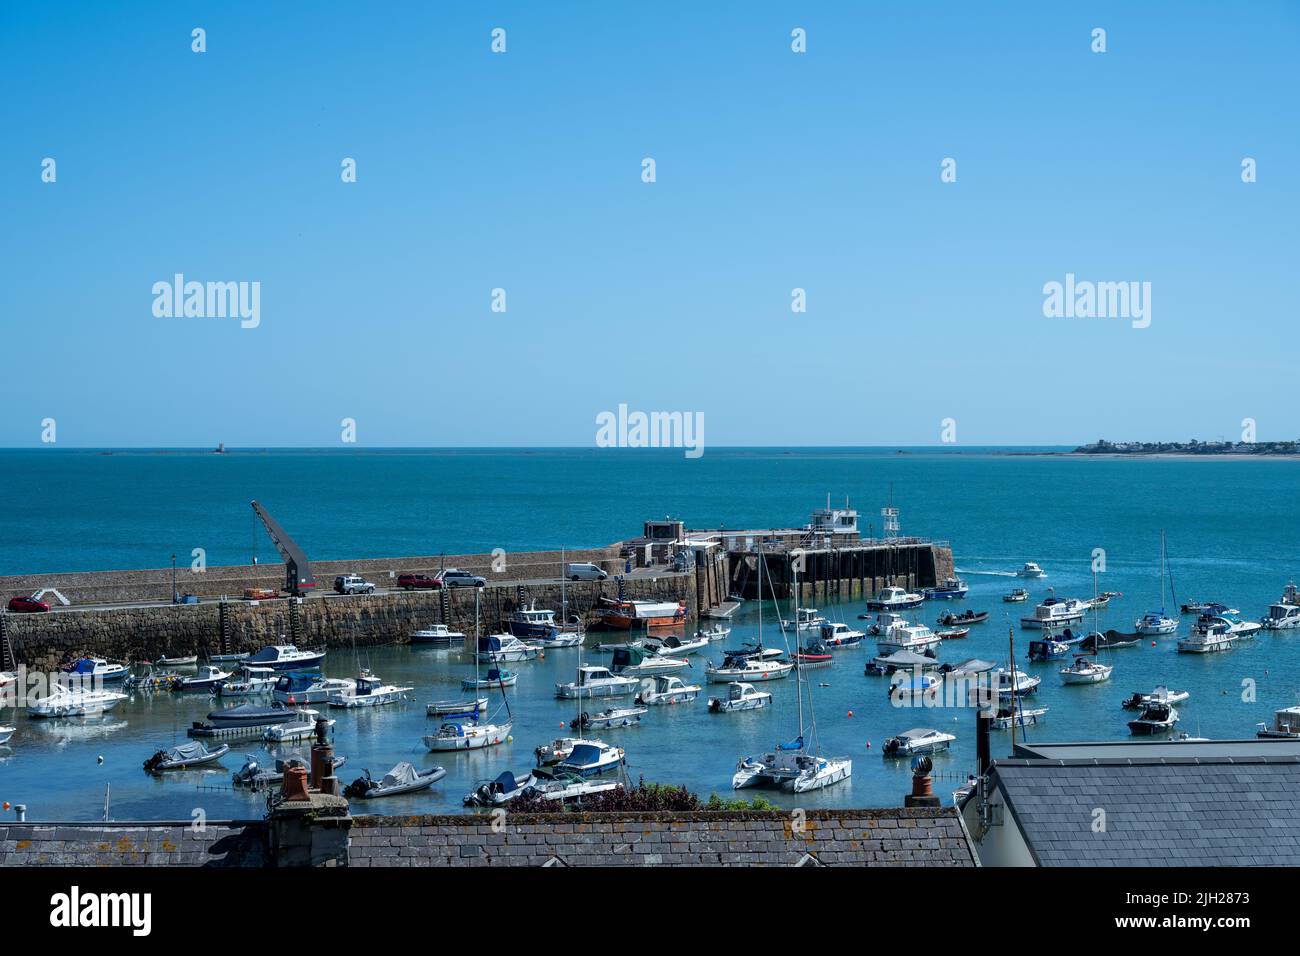 Barcos amarrados de pesca y placer en el puerto de Gorey de la dependencia de la Corona Británica de Jersey, Islas del Canal, Islas Británicas. Foto de stock